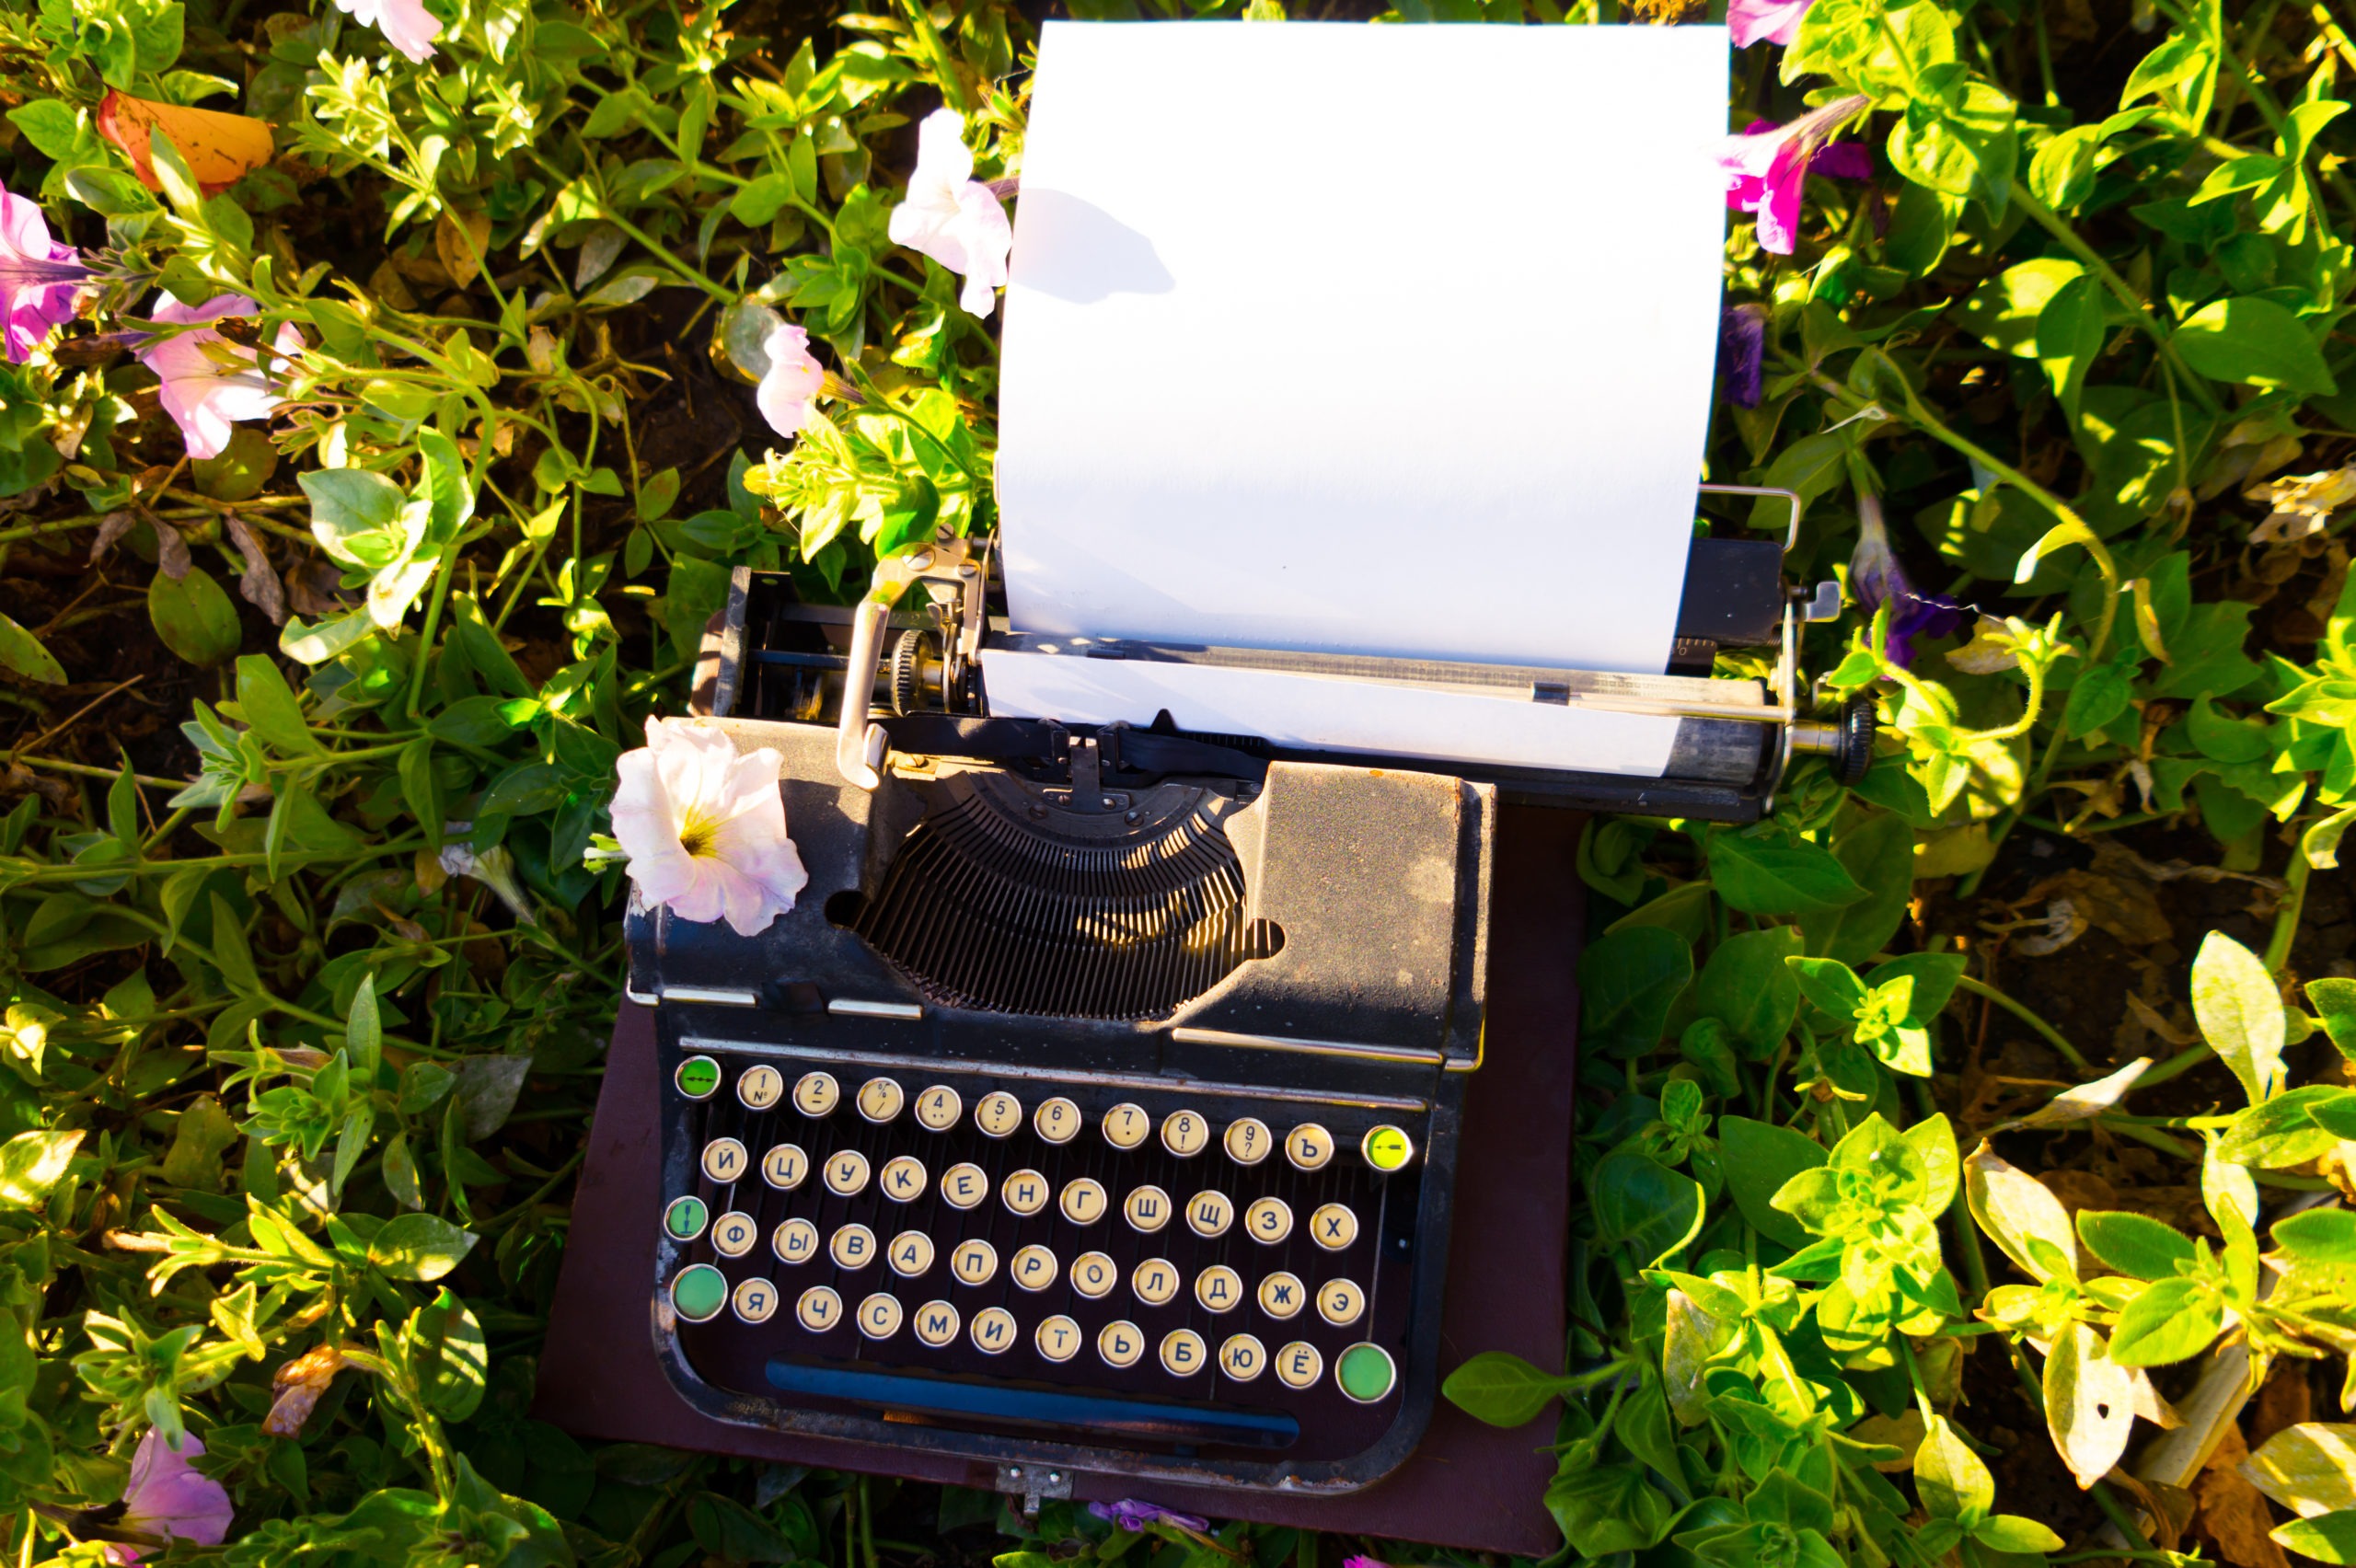 An old antique typewriter found in flowers.